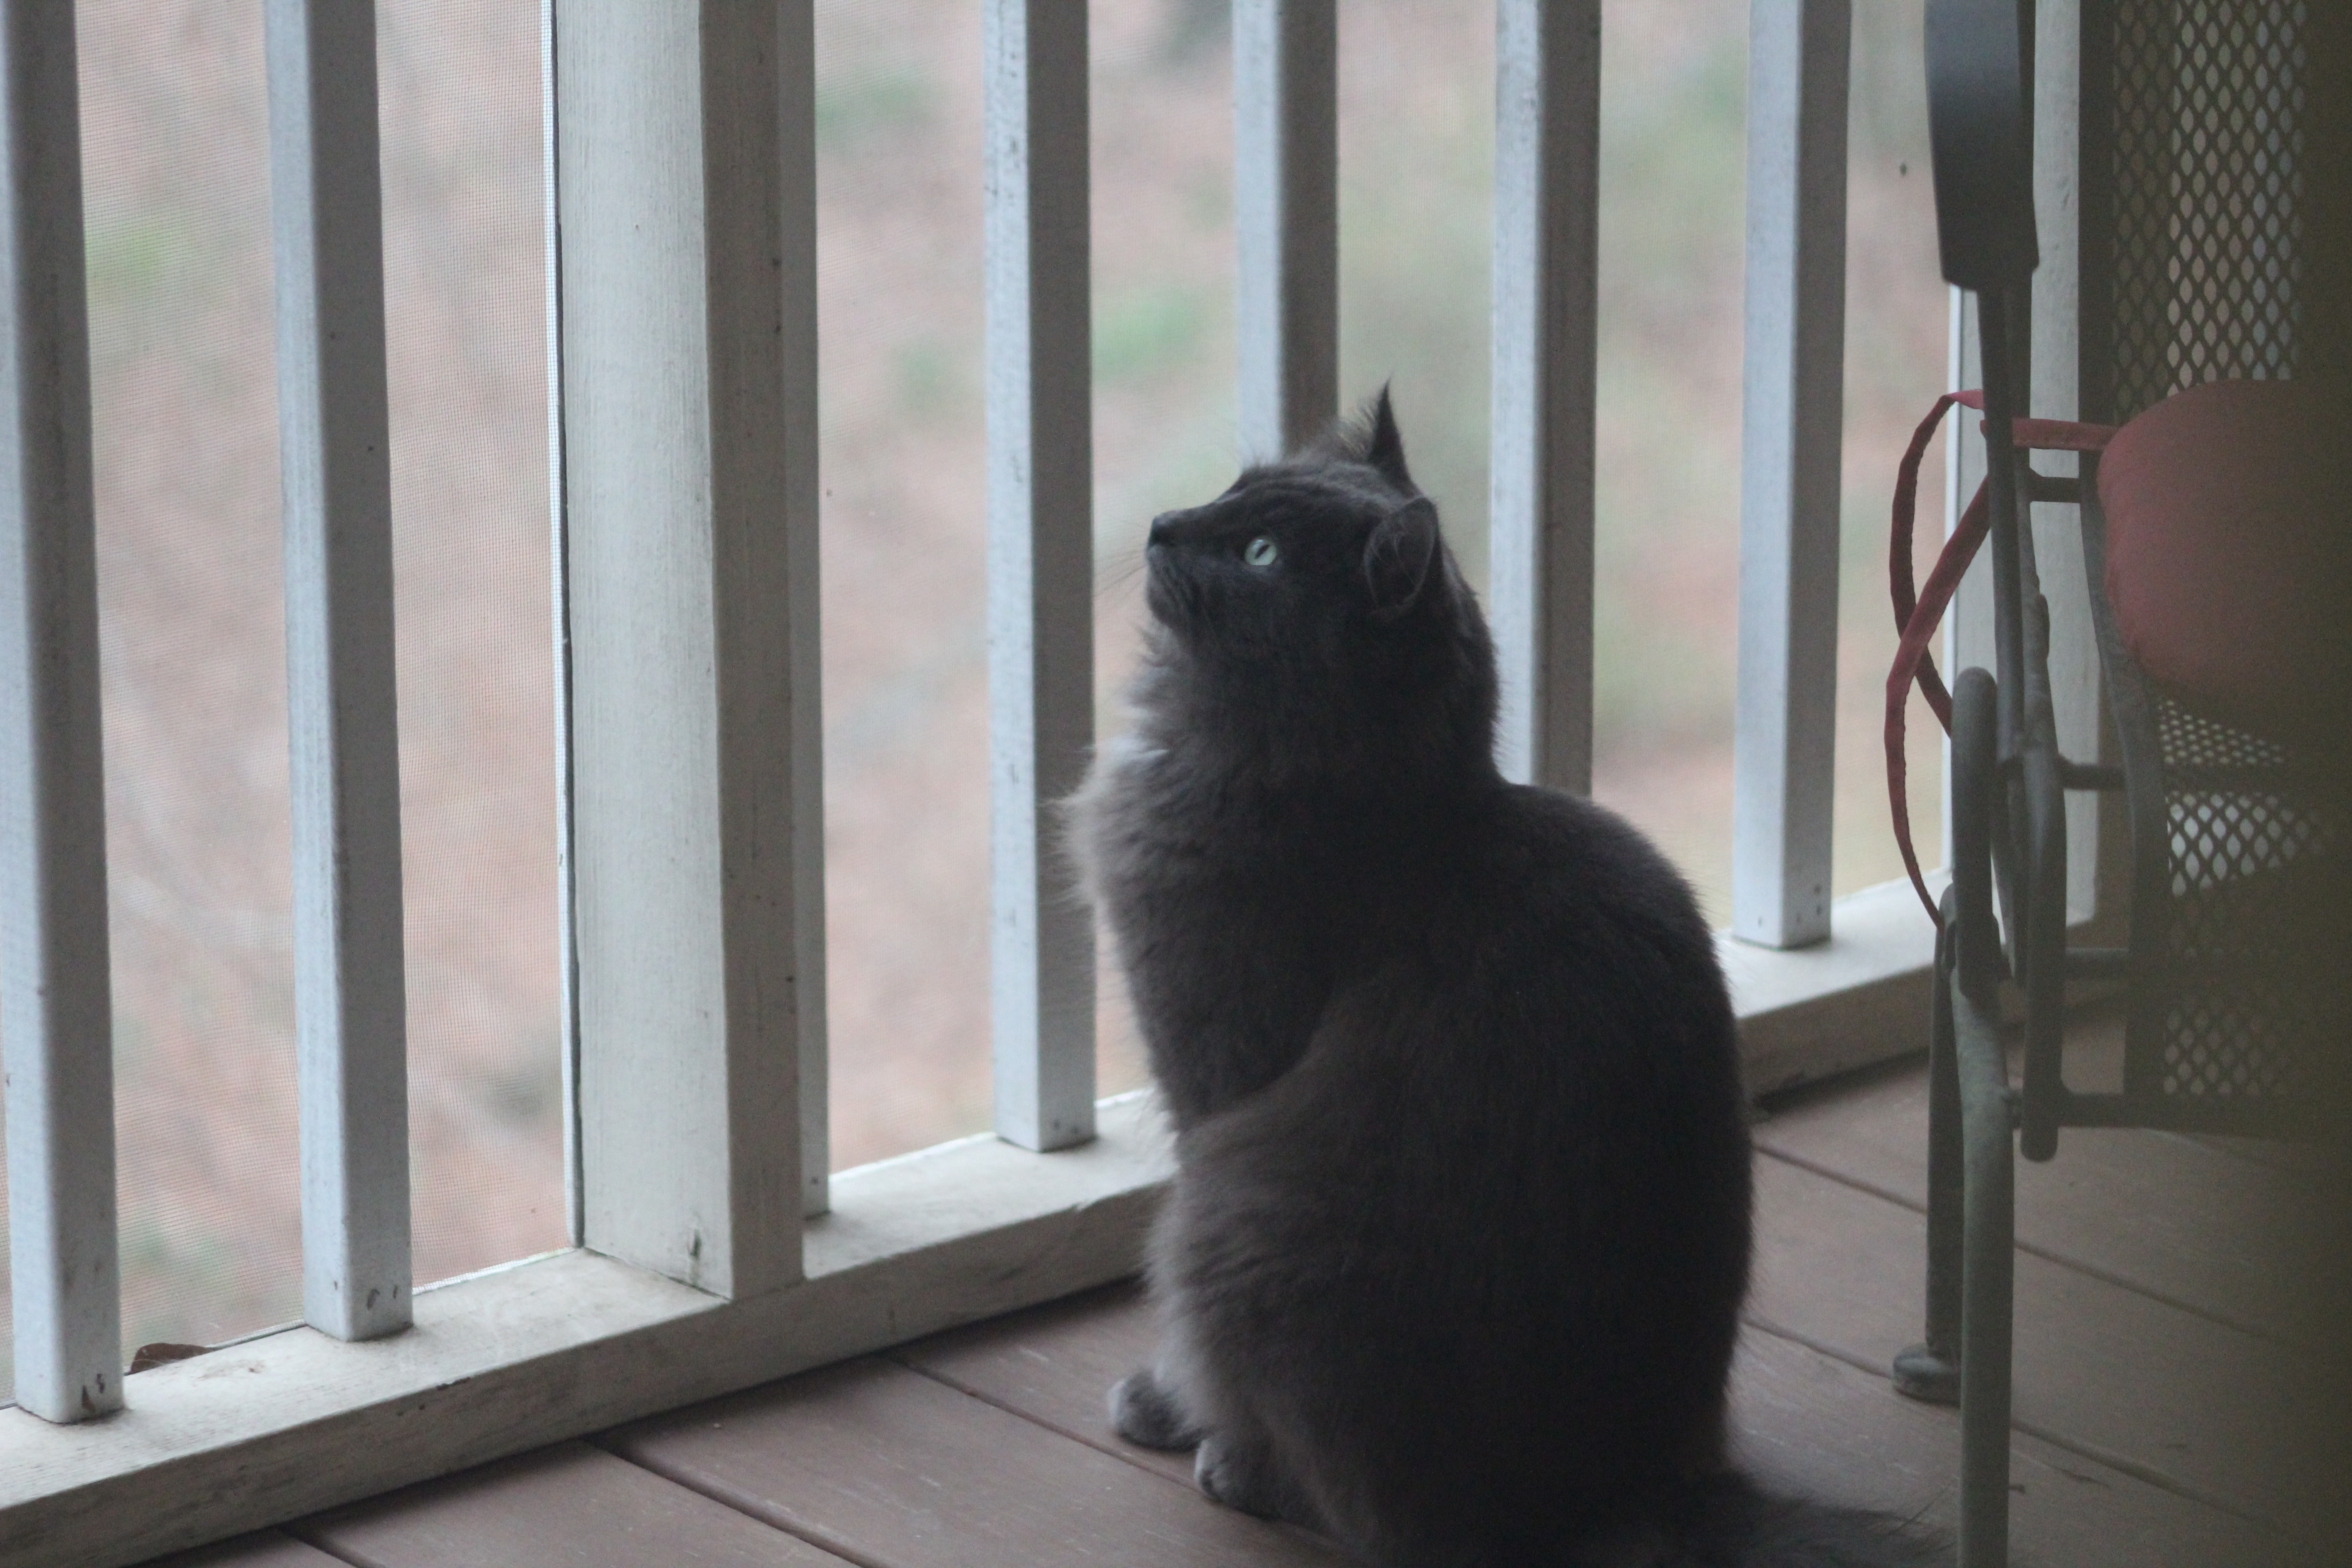 adoptable Cat in Atlanta,GA named Mr. Kitty